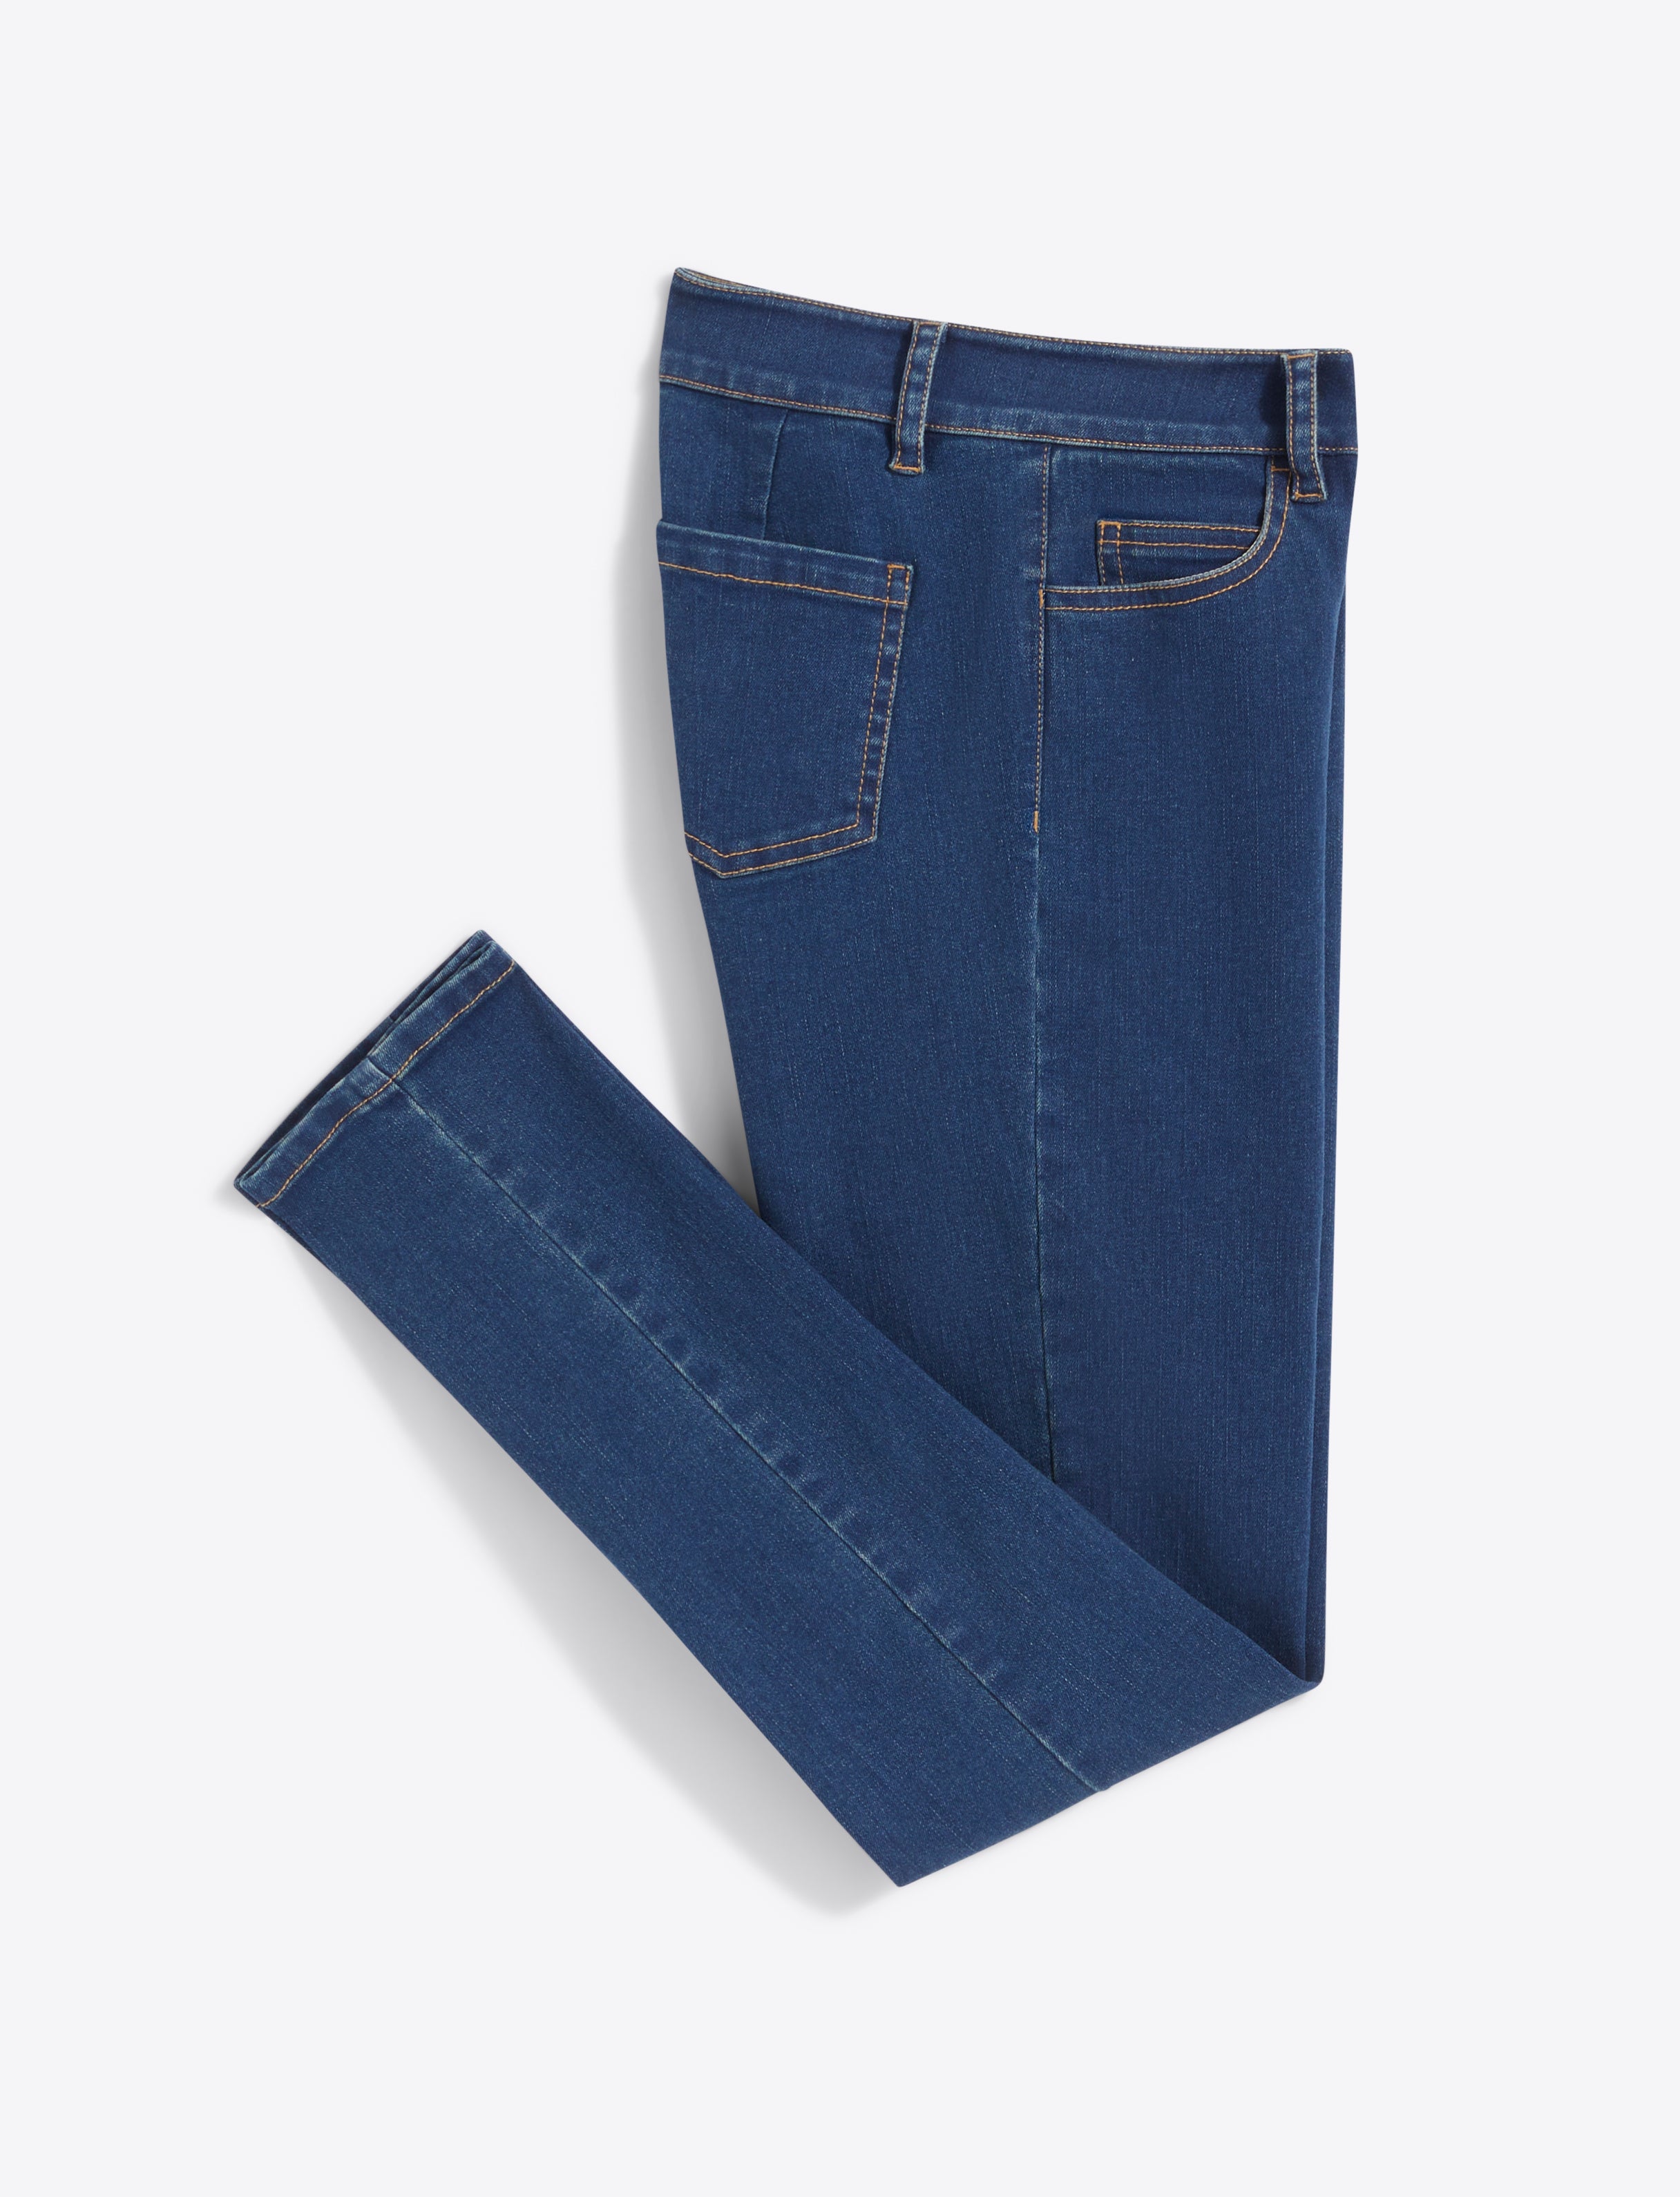 Buy NEON 9 Girls Boyfriend Loose Fit Denim Jeans |Girls Jeans | Jeans | Denim  Jeans | Online at Best Prices in India - JioMart.